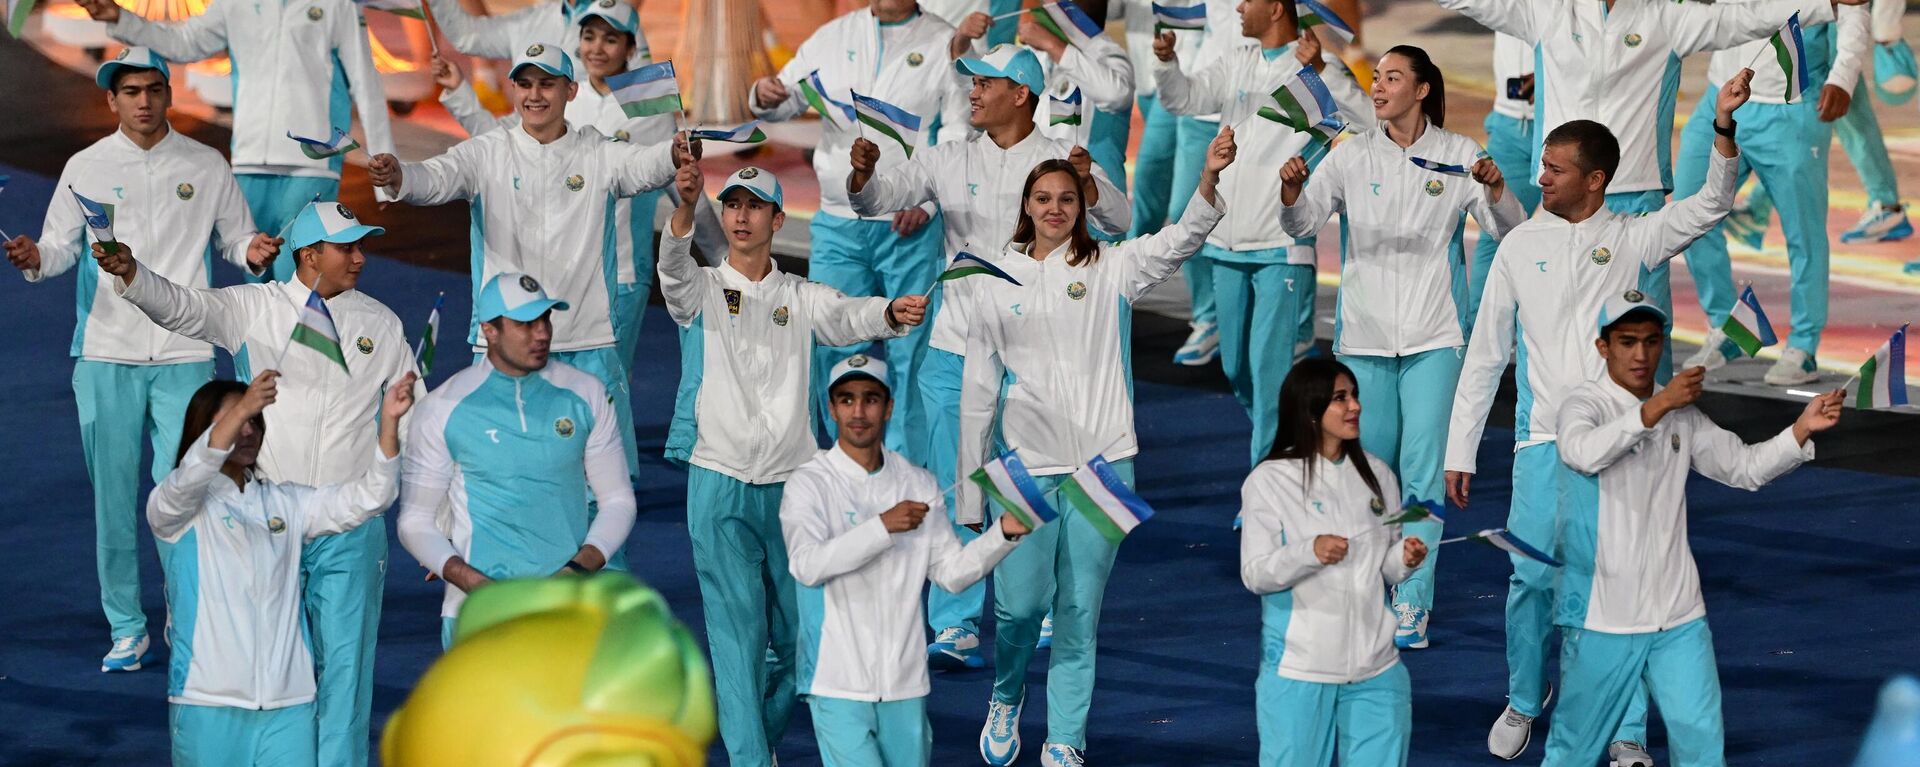 Узбекские спортсмены во время церемонии открытия Азиатских игр 2022 года в Ханчжоу 23 сентября 2023 года. - Sputnik Узбекистан, 1920, 26.09.2023